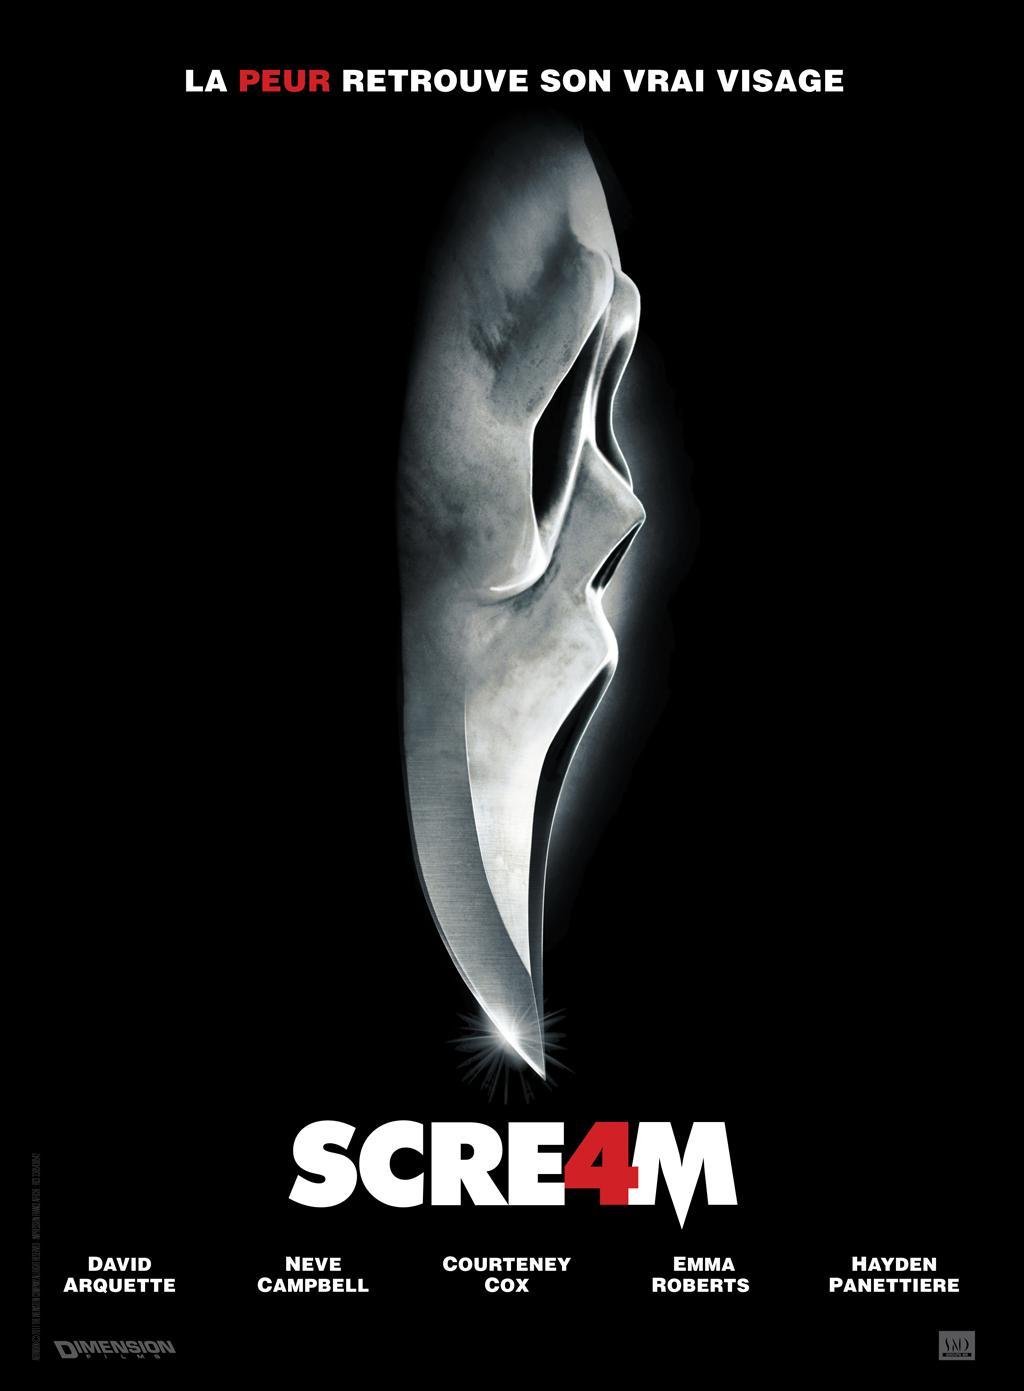 Scream 4, la suite qui renouvelle le genre (Test DVD)